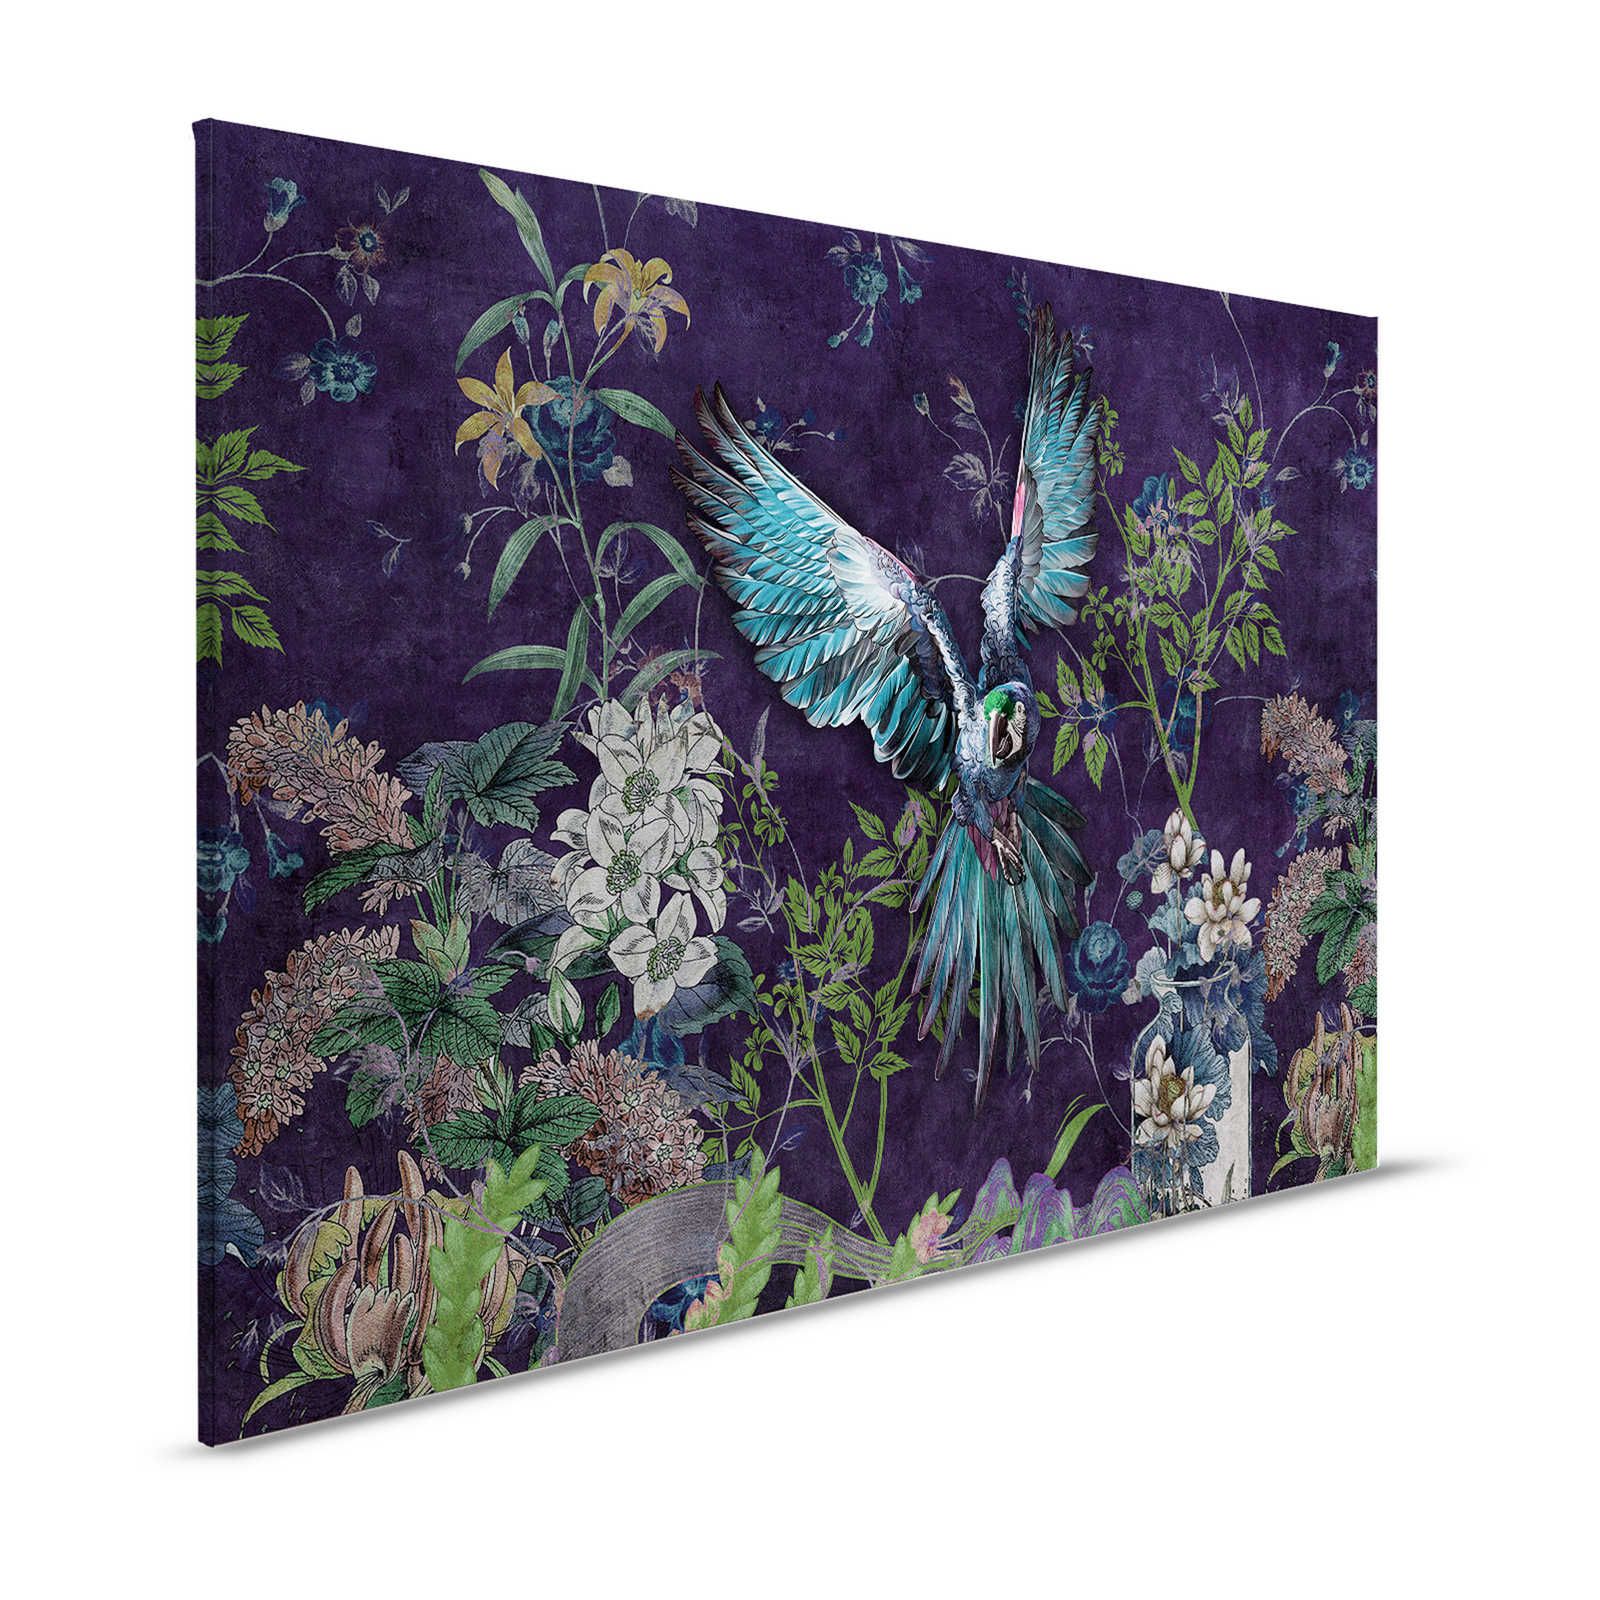 Tropical Hero 2 - Pappagallo dipinto su tela con fiori e sfondo nero - 1,20 m x 0,80 m
